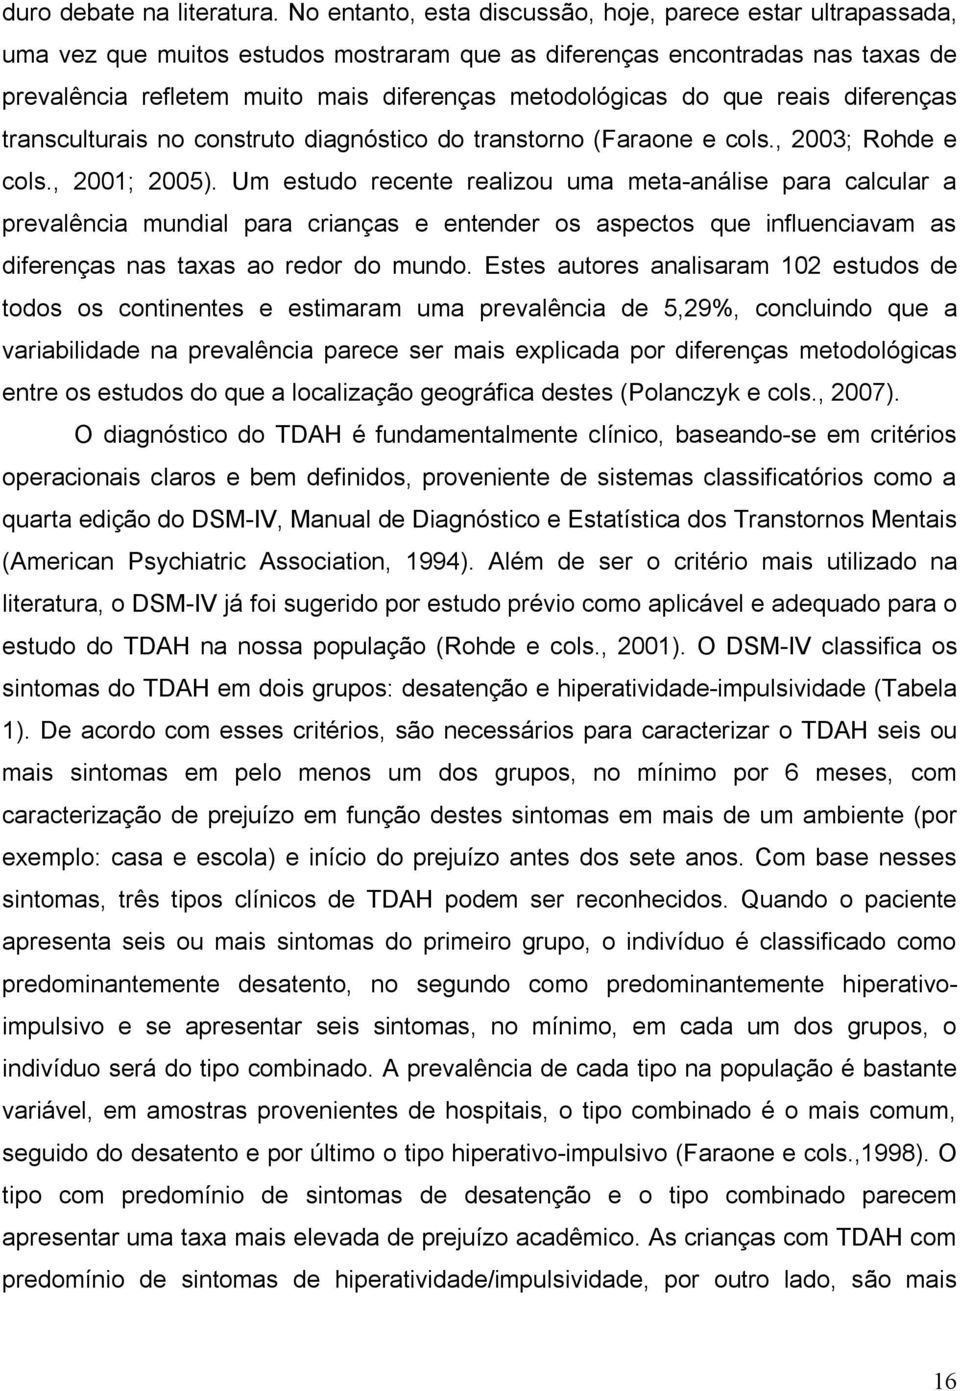 do que reais diferenças transculturais no construto diagnóstico do transtorno (Faraone e cols., 2003; Rohde e cols., 2001; 2005).